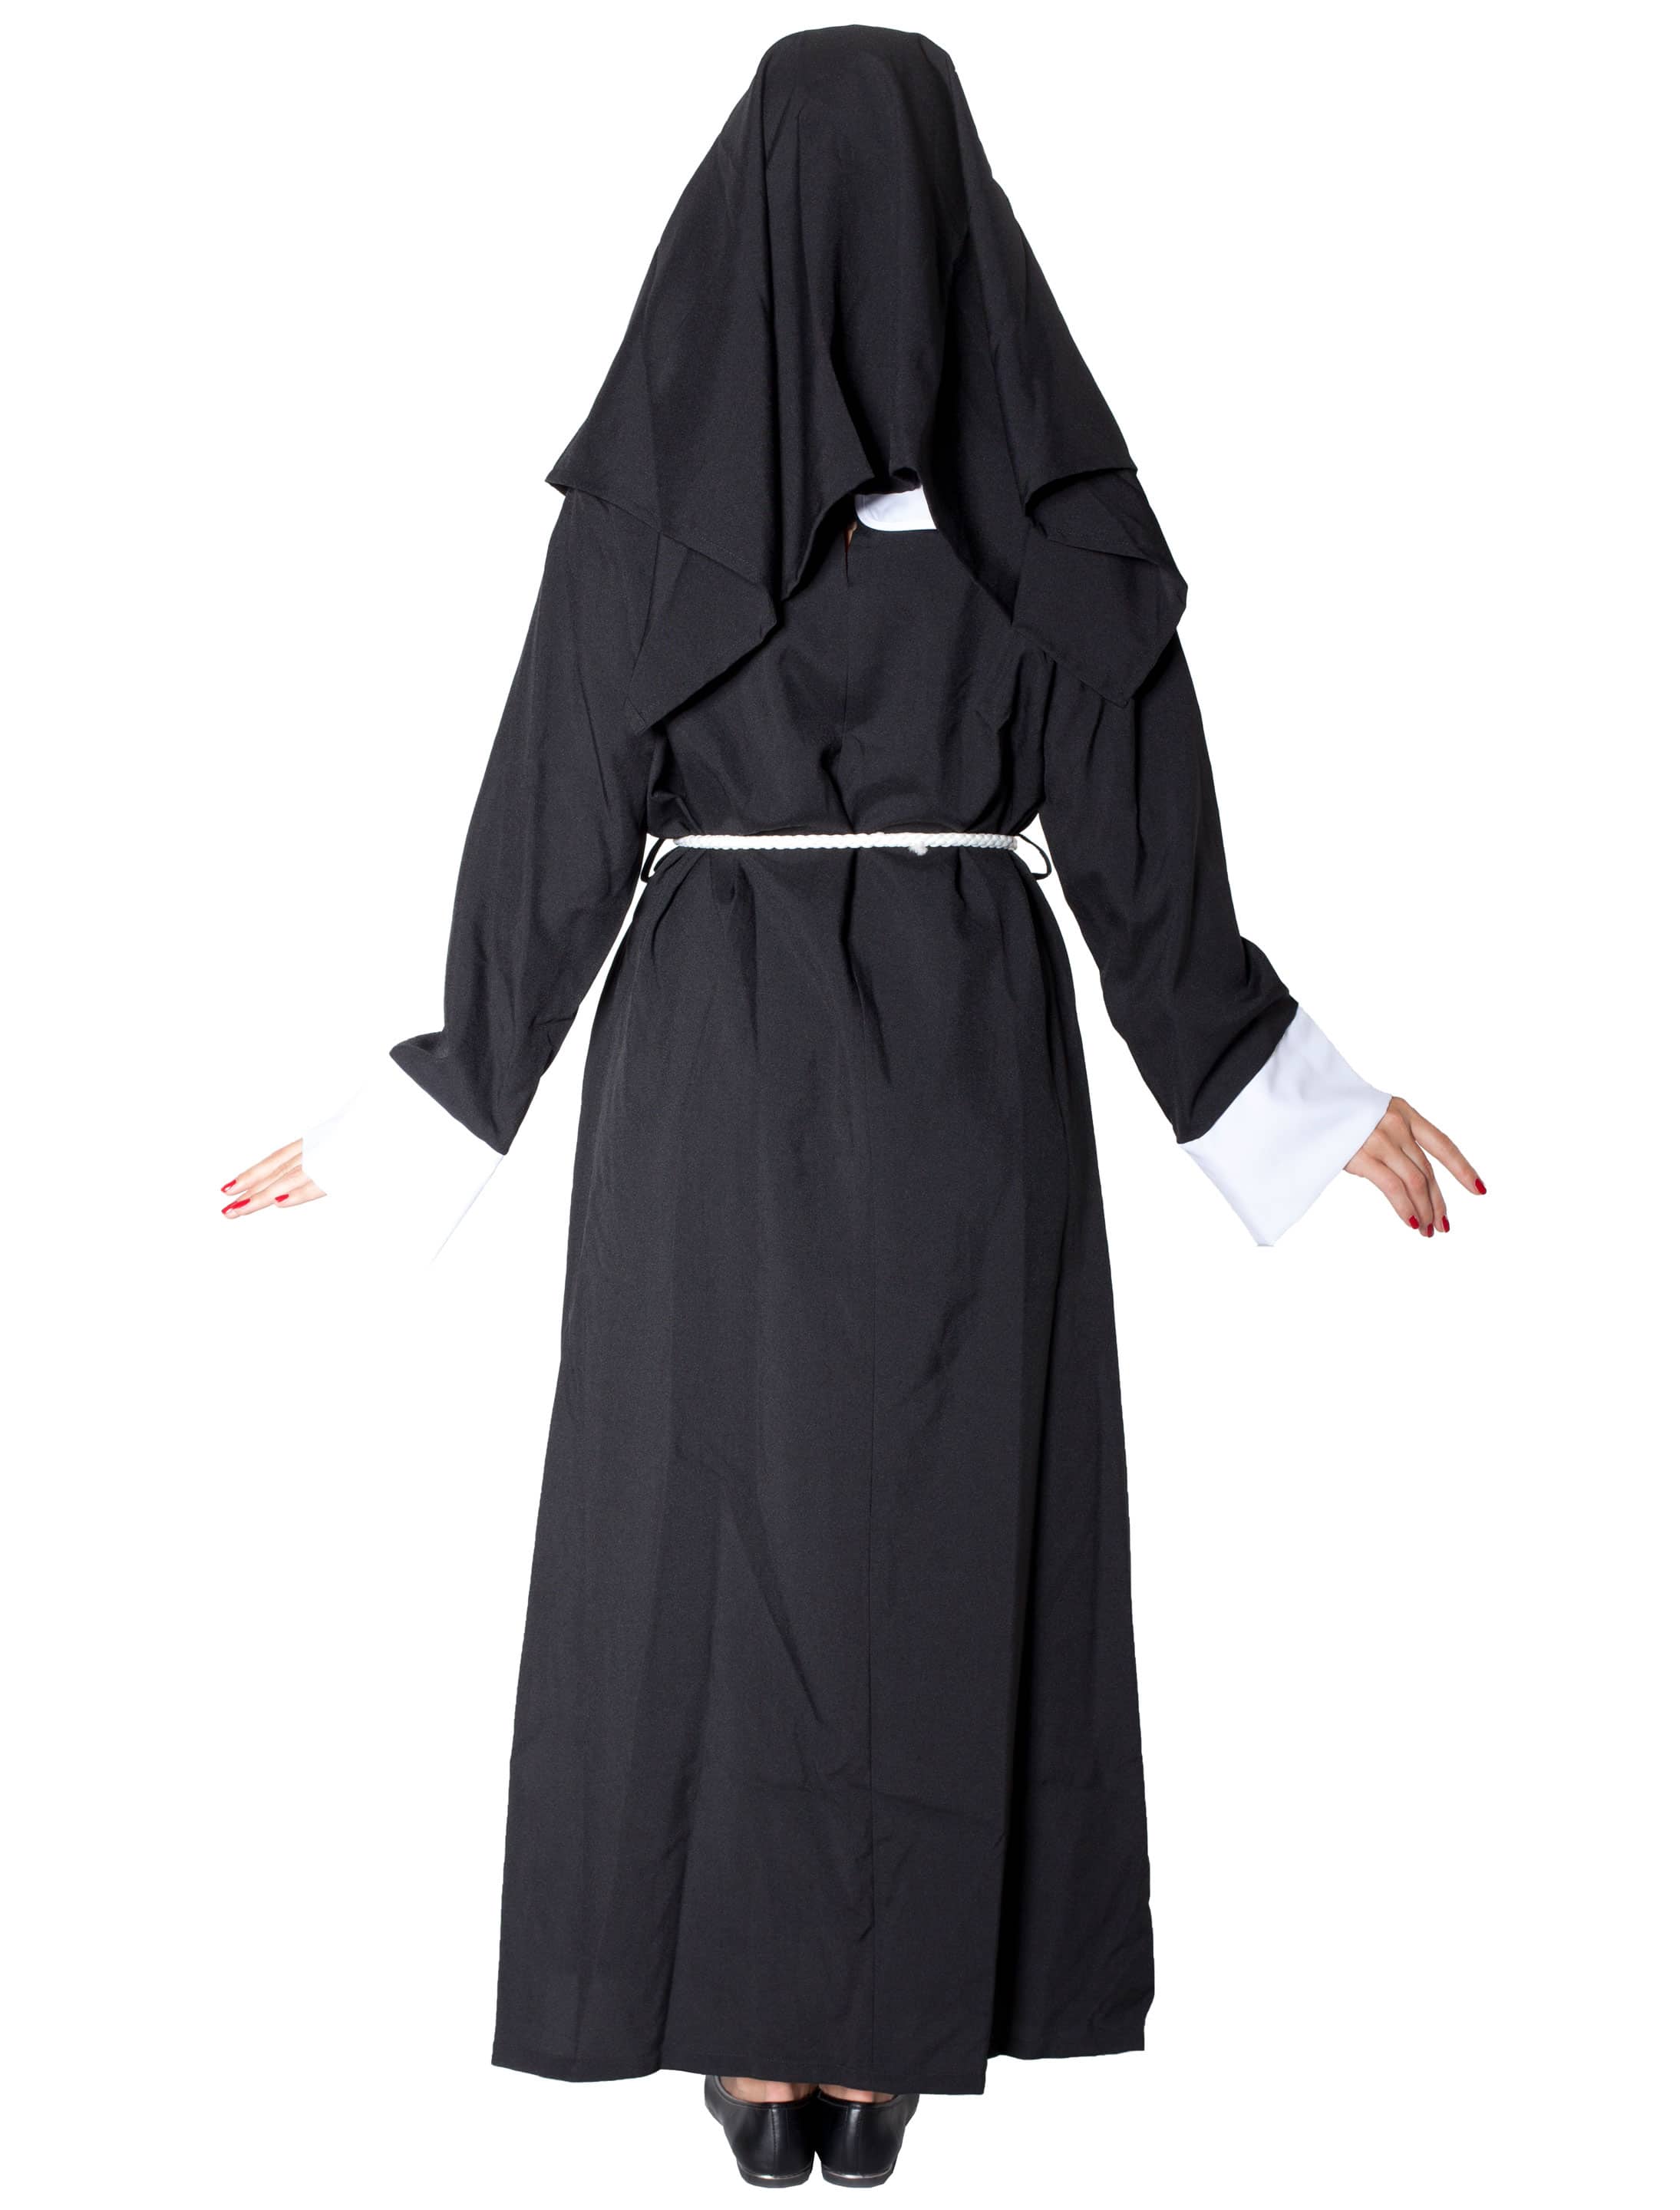 Nonne Damen 3-tlg. schwarz/weiß 48